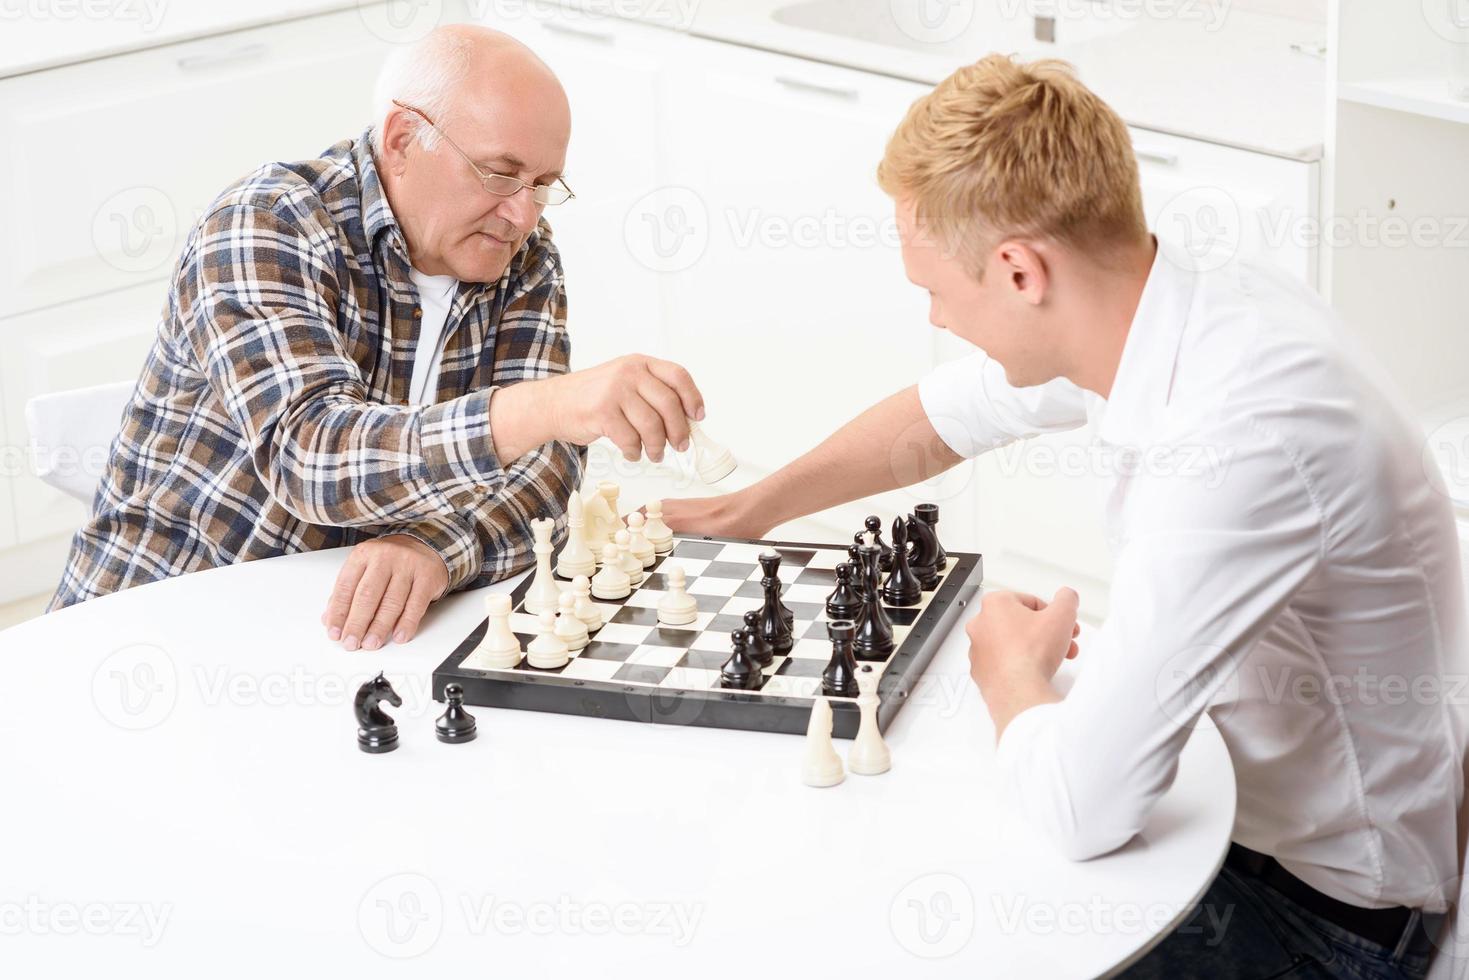 kleinzoon en grootvader schaken in de keuken foto